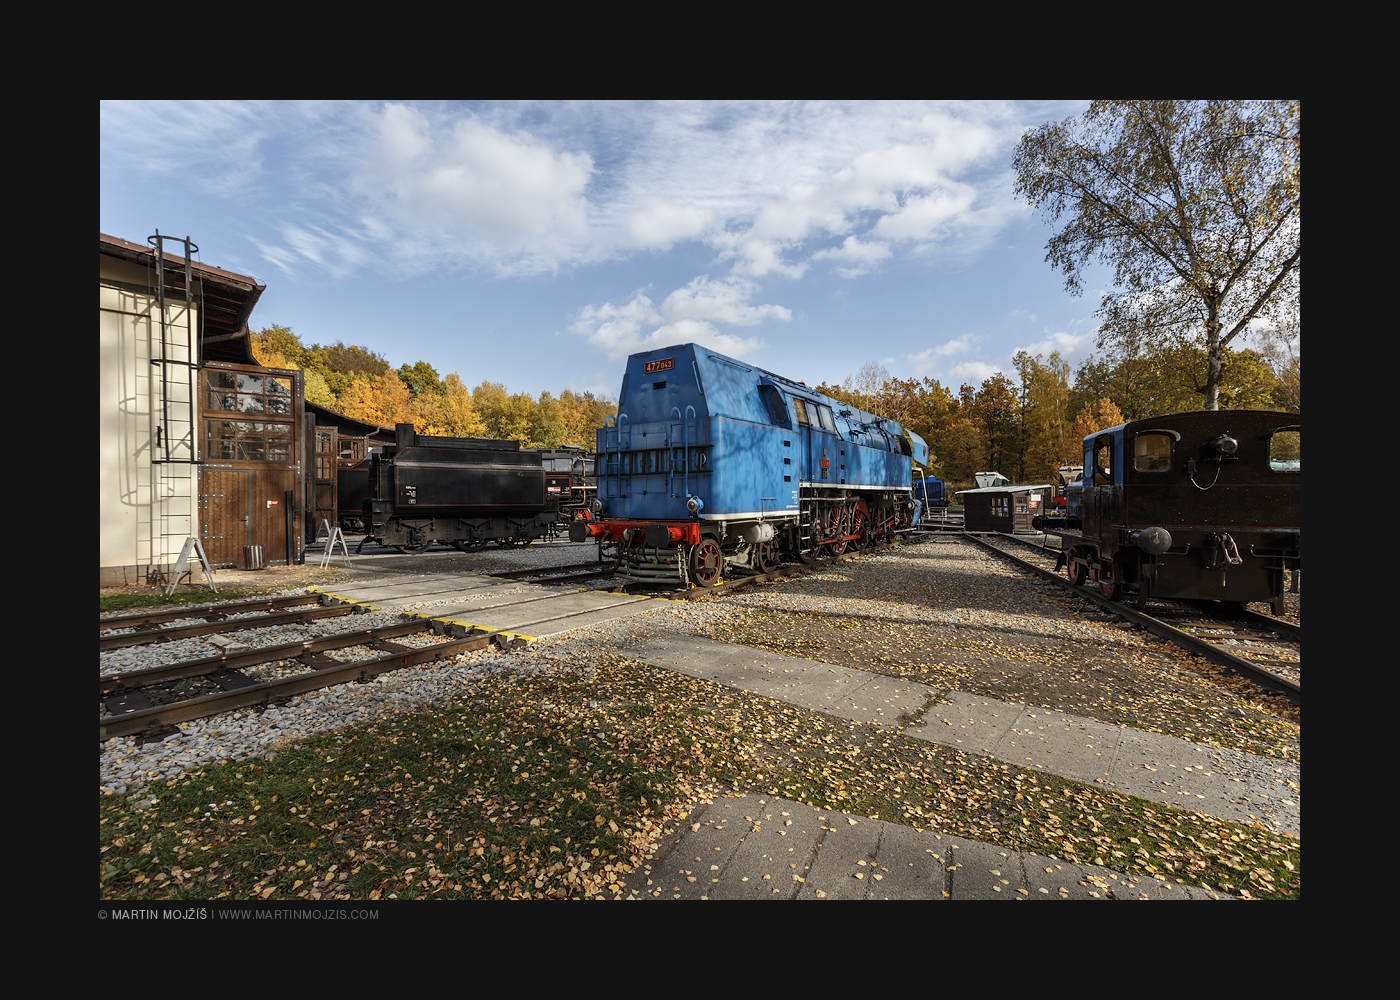 Photograph from railway (railroad) museum in Luzna near Rakovnik in Czech Republic.